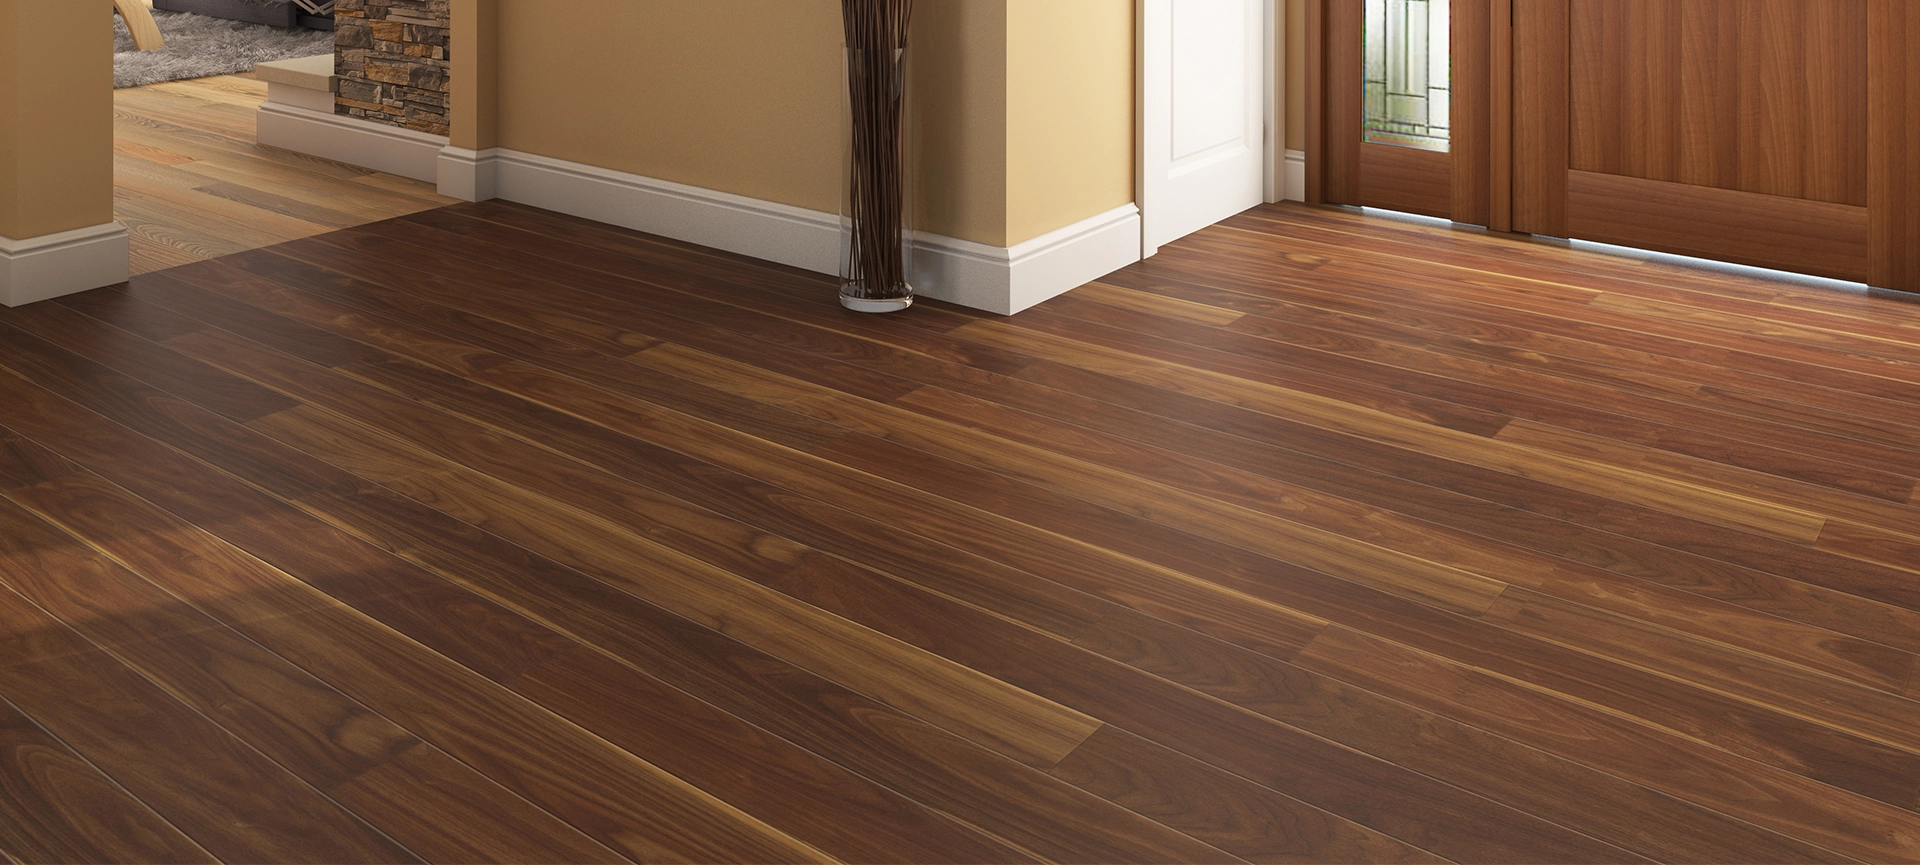 hardwood flooring trends